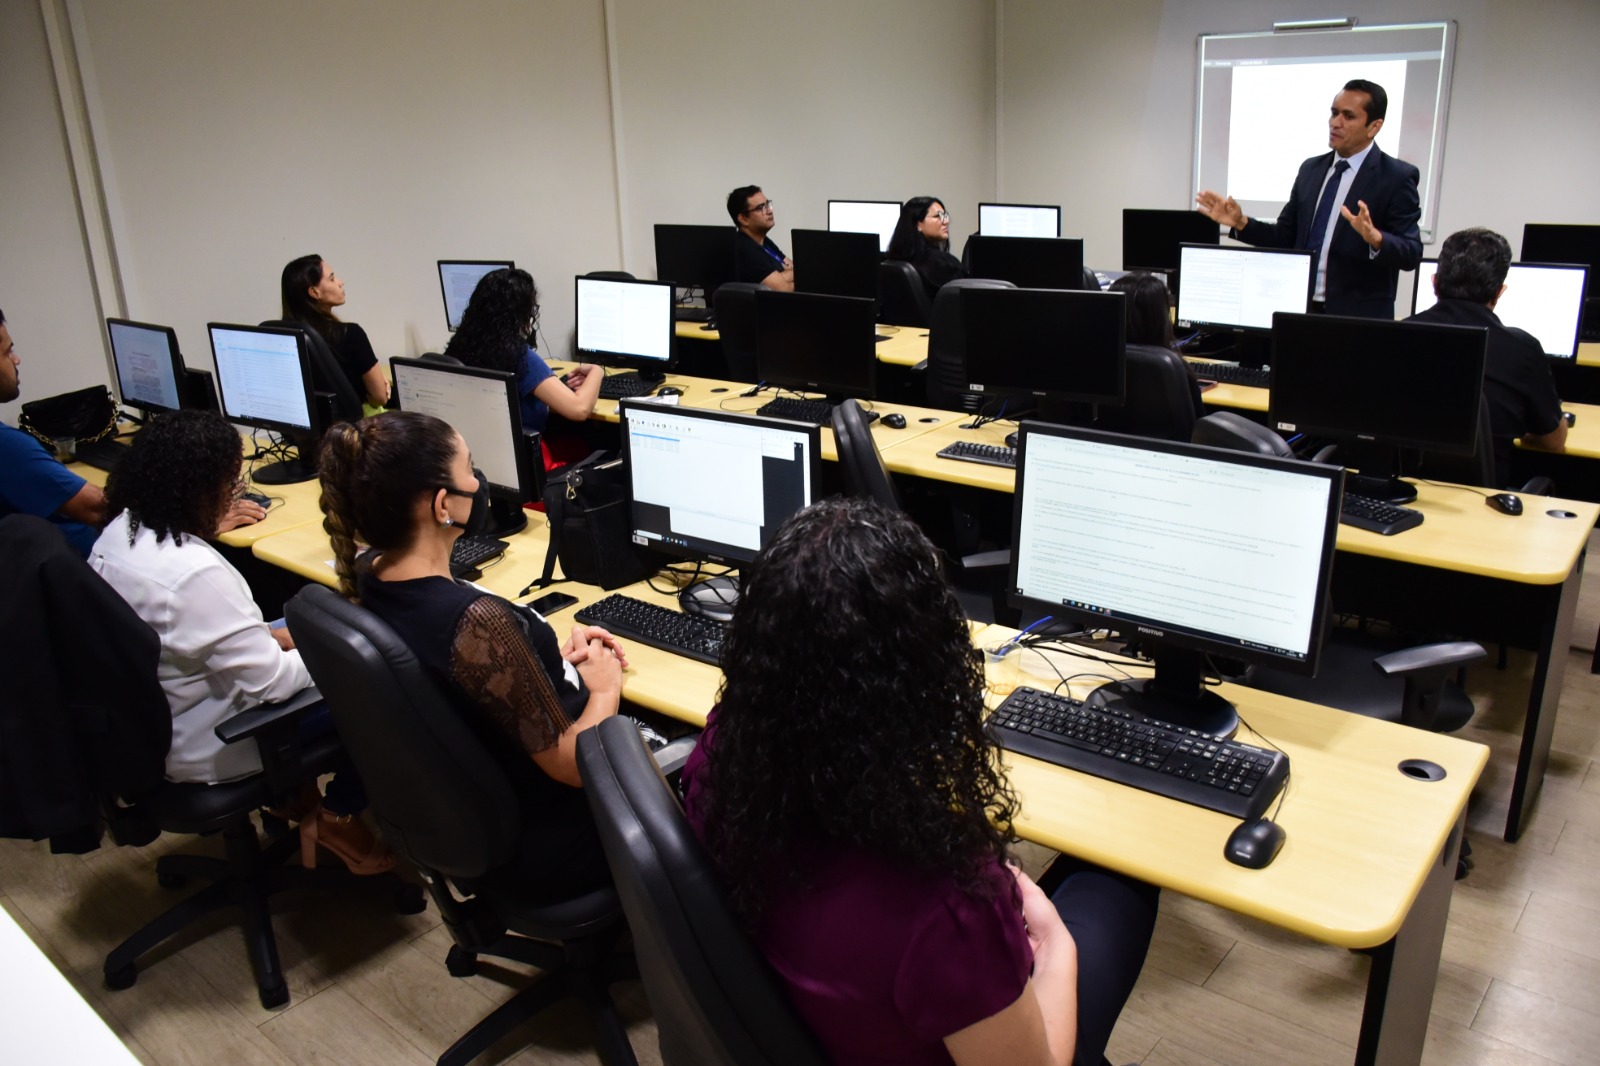 Imagem colorida mostra 11 servidores sentados em frente a computadores distribuídos em quatro fileiras. Eles observam atentos o condutor do treinamento, que está em pé à frente deles, trajando terno e gravata.